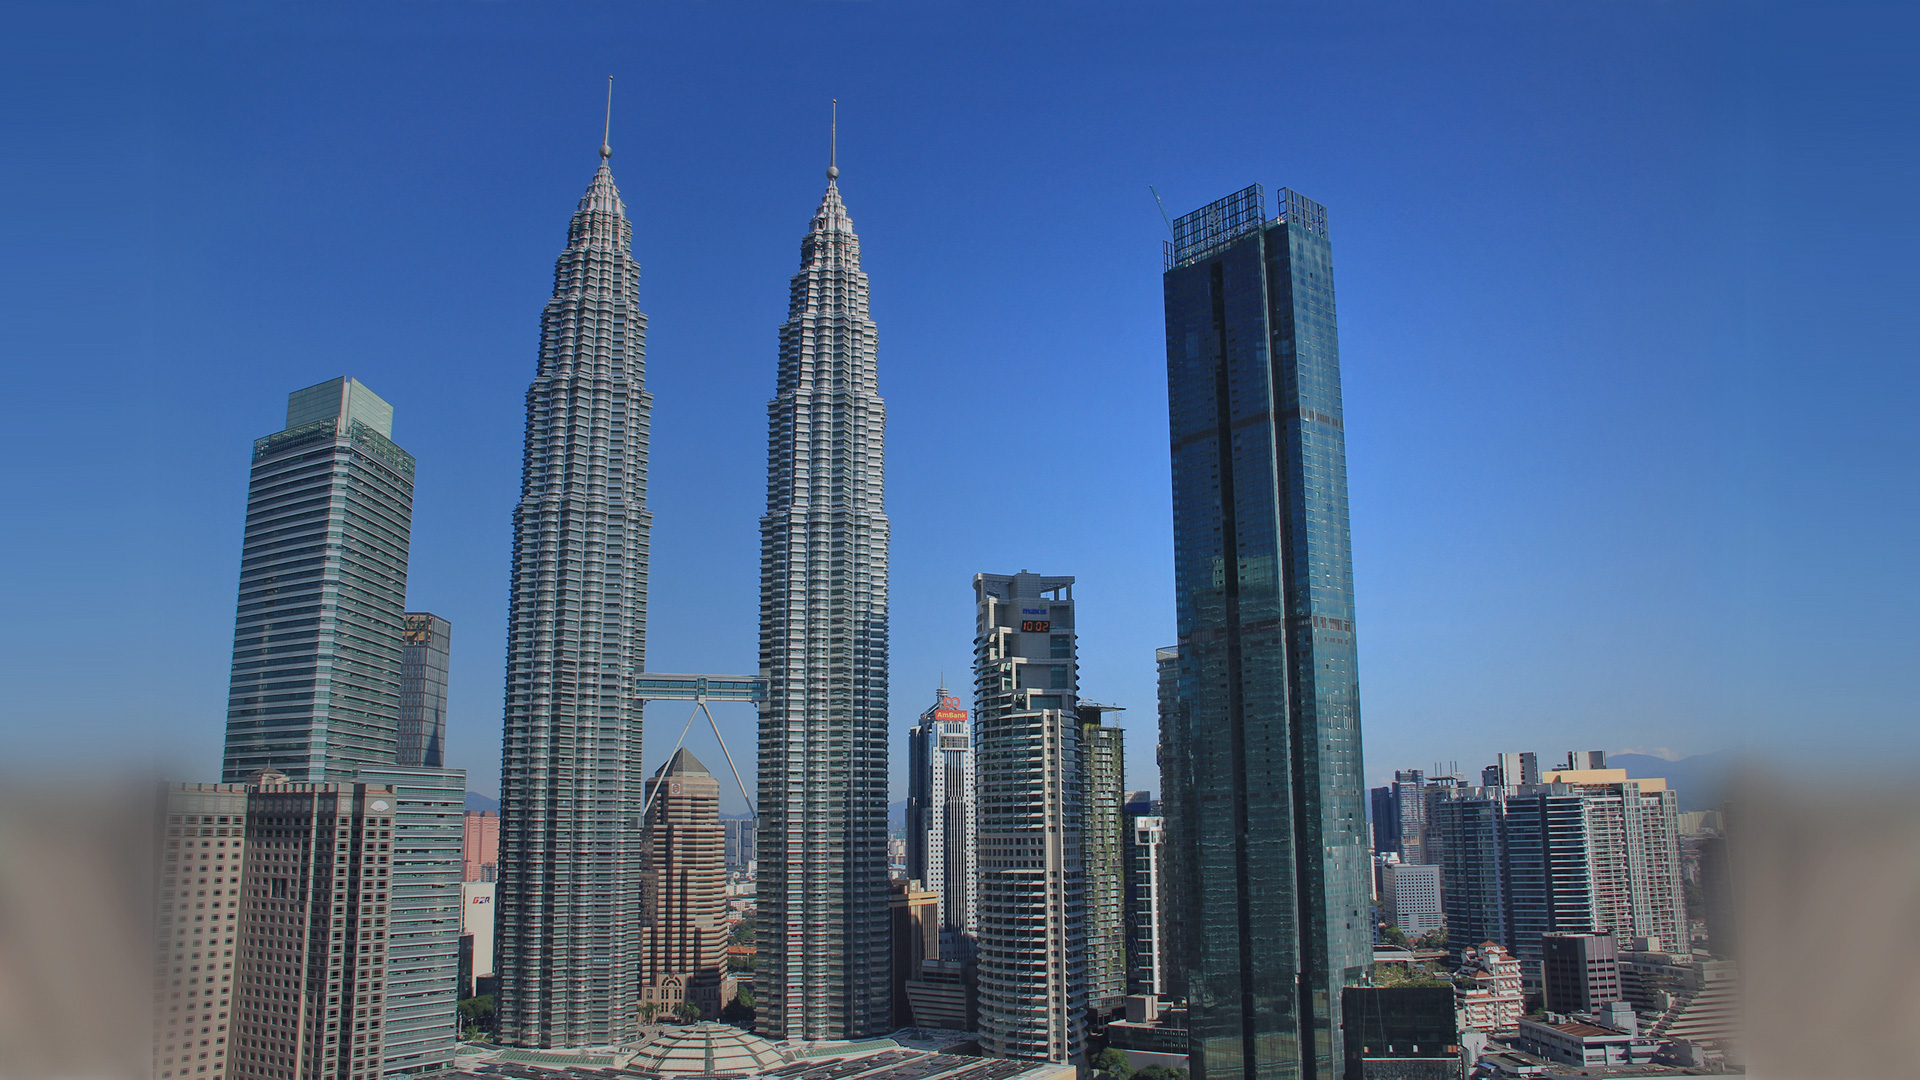 Der 343 Meter hohe Wolkenkratzer des Four Seasons Place liegt in unmittelbarer Nähe zu den bekannten Petronas Towers und wird mit 77 Stockwerken das zweithöchste Gebäude der Stadt sein.